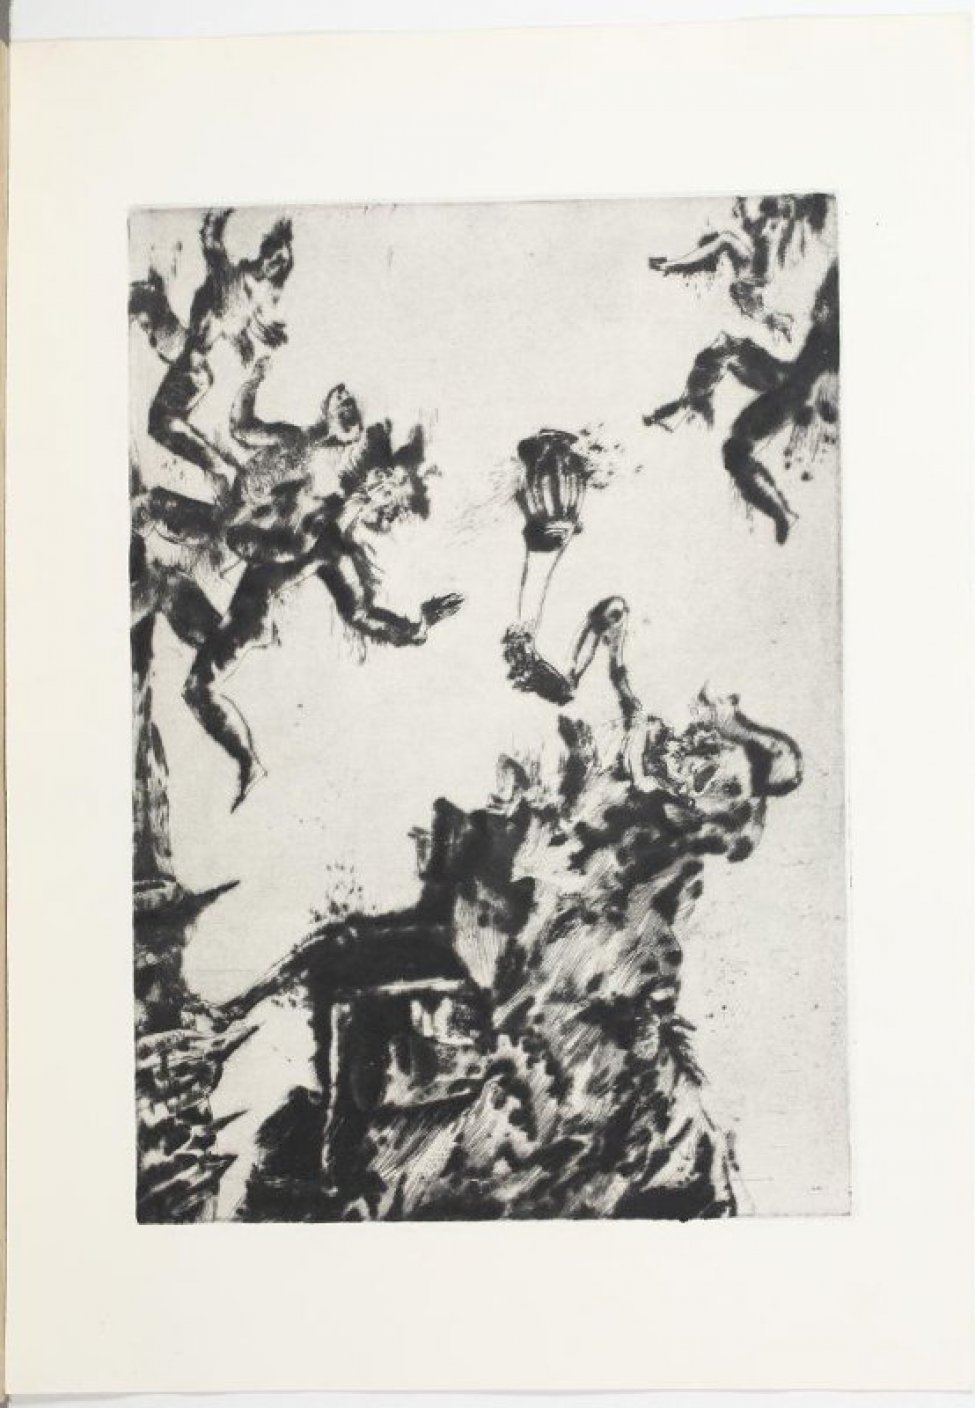 В левой части композиции, вверху и внизу, изображены фигуры бегущих людей. Справа - крупная фигура скелета в бесформенной темной одежде. В его руках - фонарь.